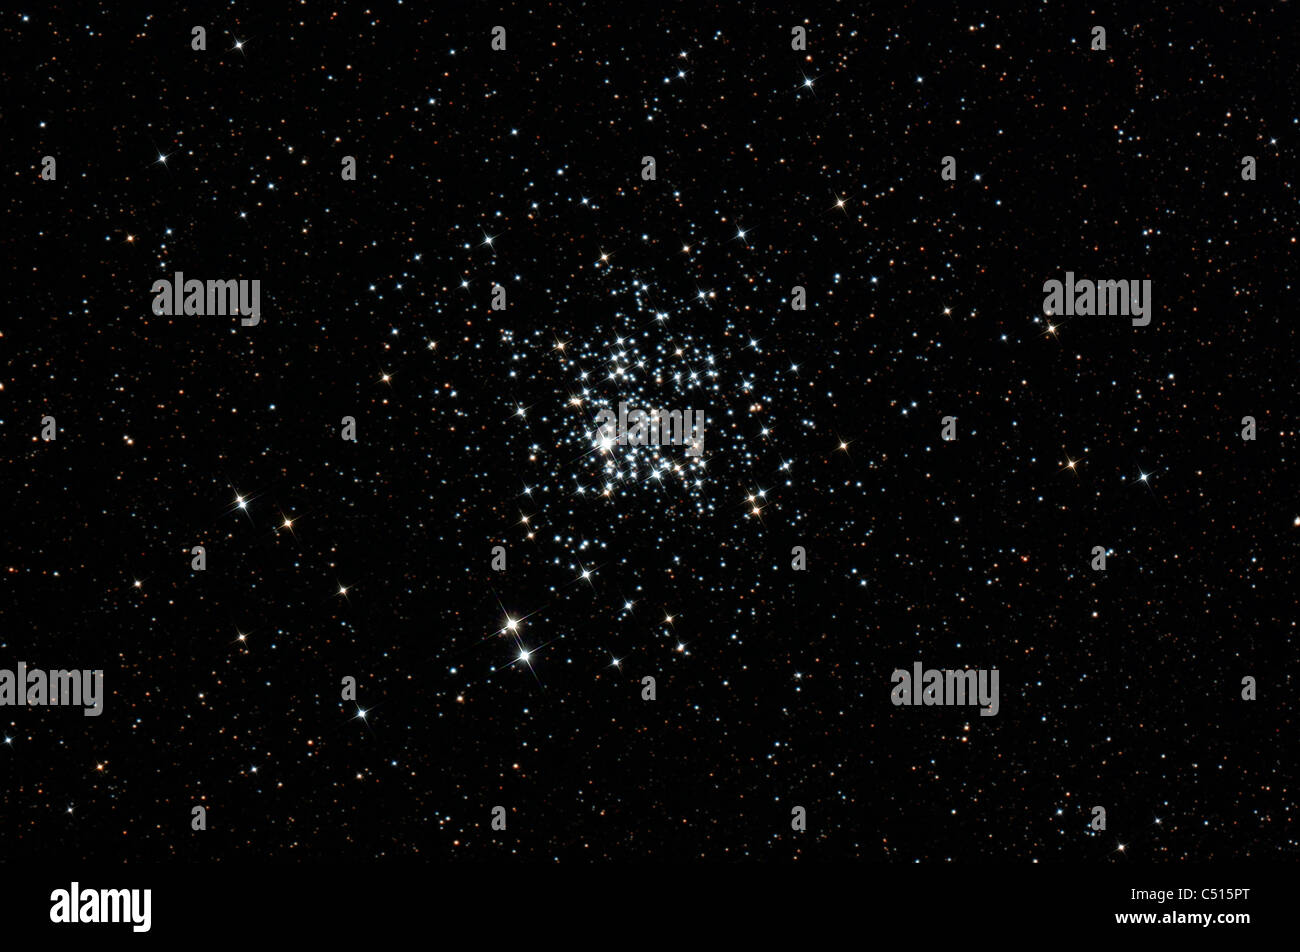 L'anatra selvatica cluster, nota anche come Messier 11, nella costellazione Scutum. Foto Stock